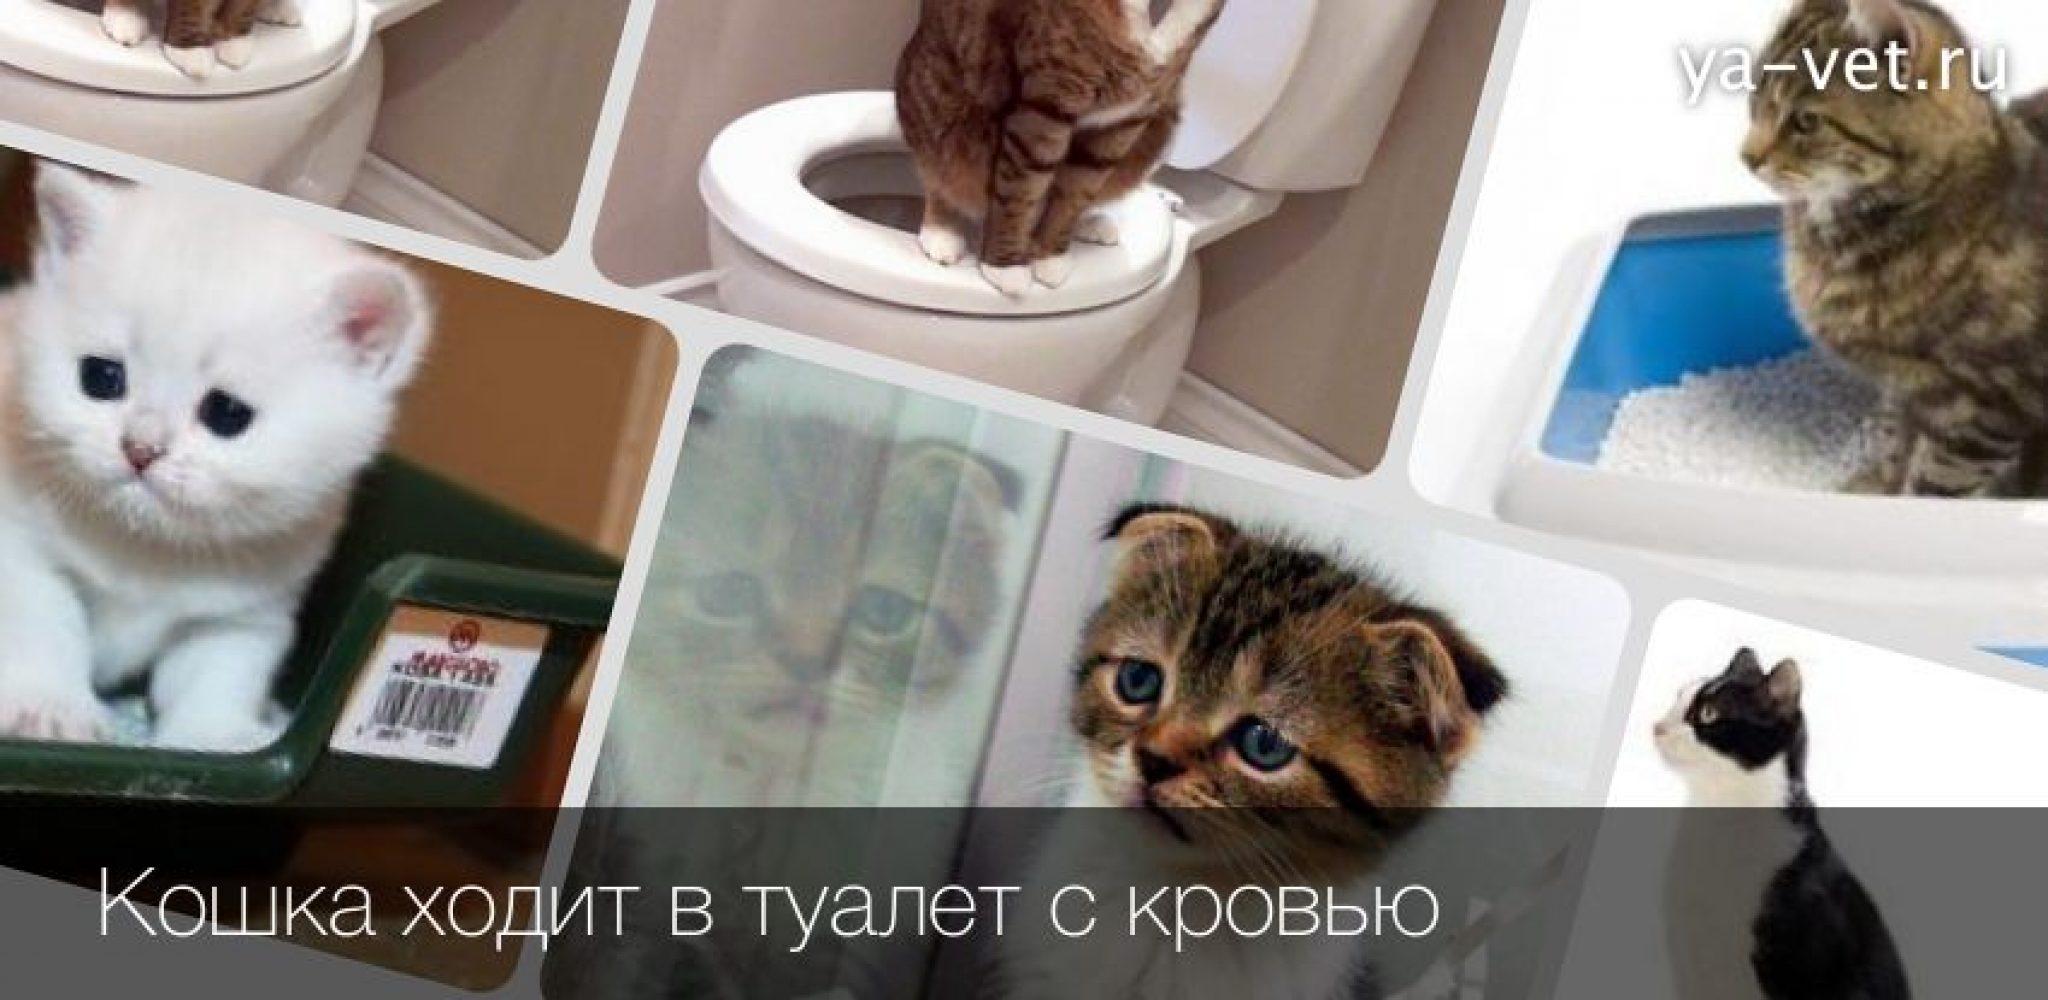 Кошка туалет кровь. Кошка ходит в туалет с кровью.